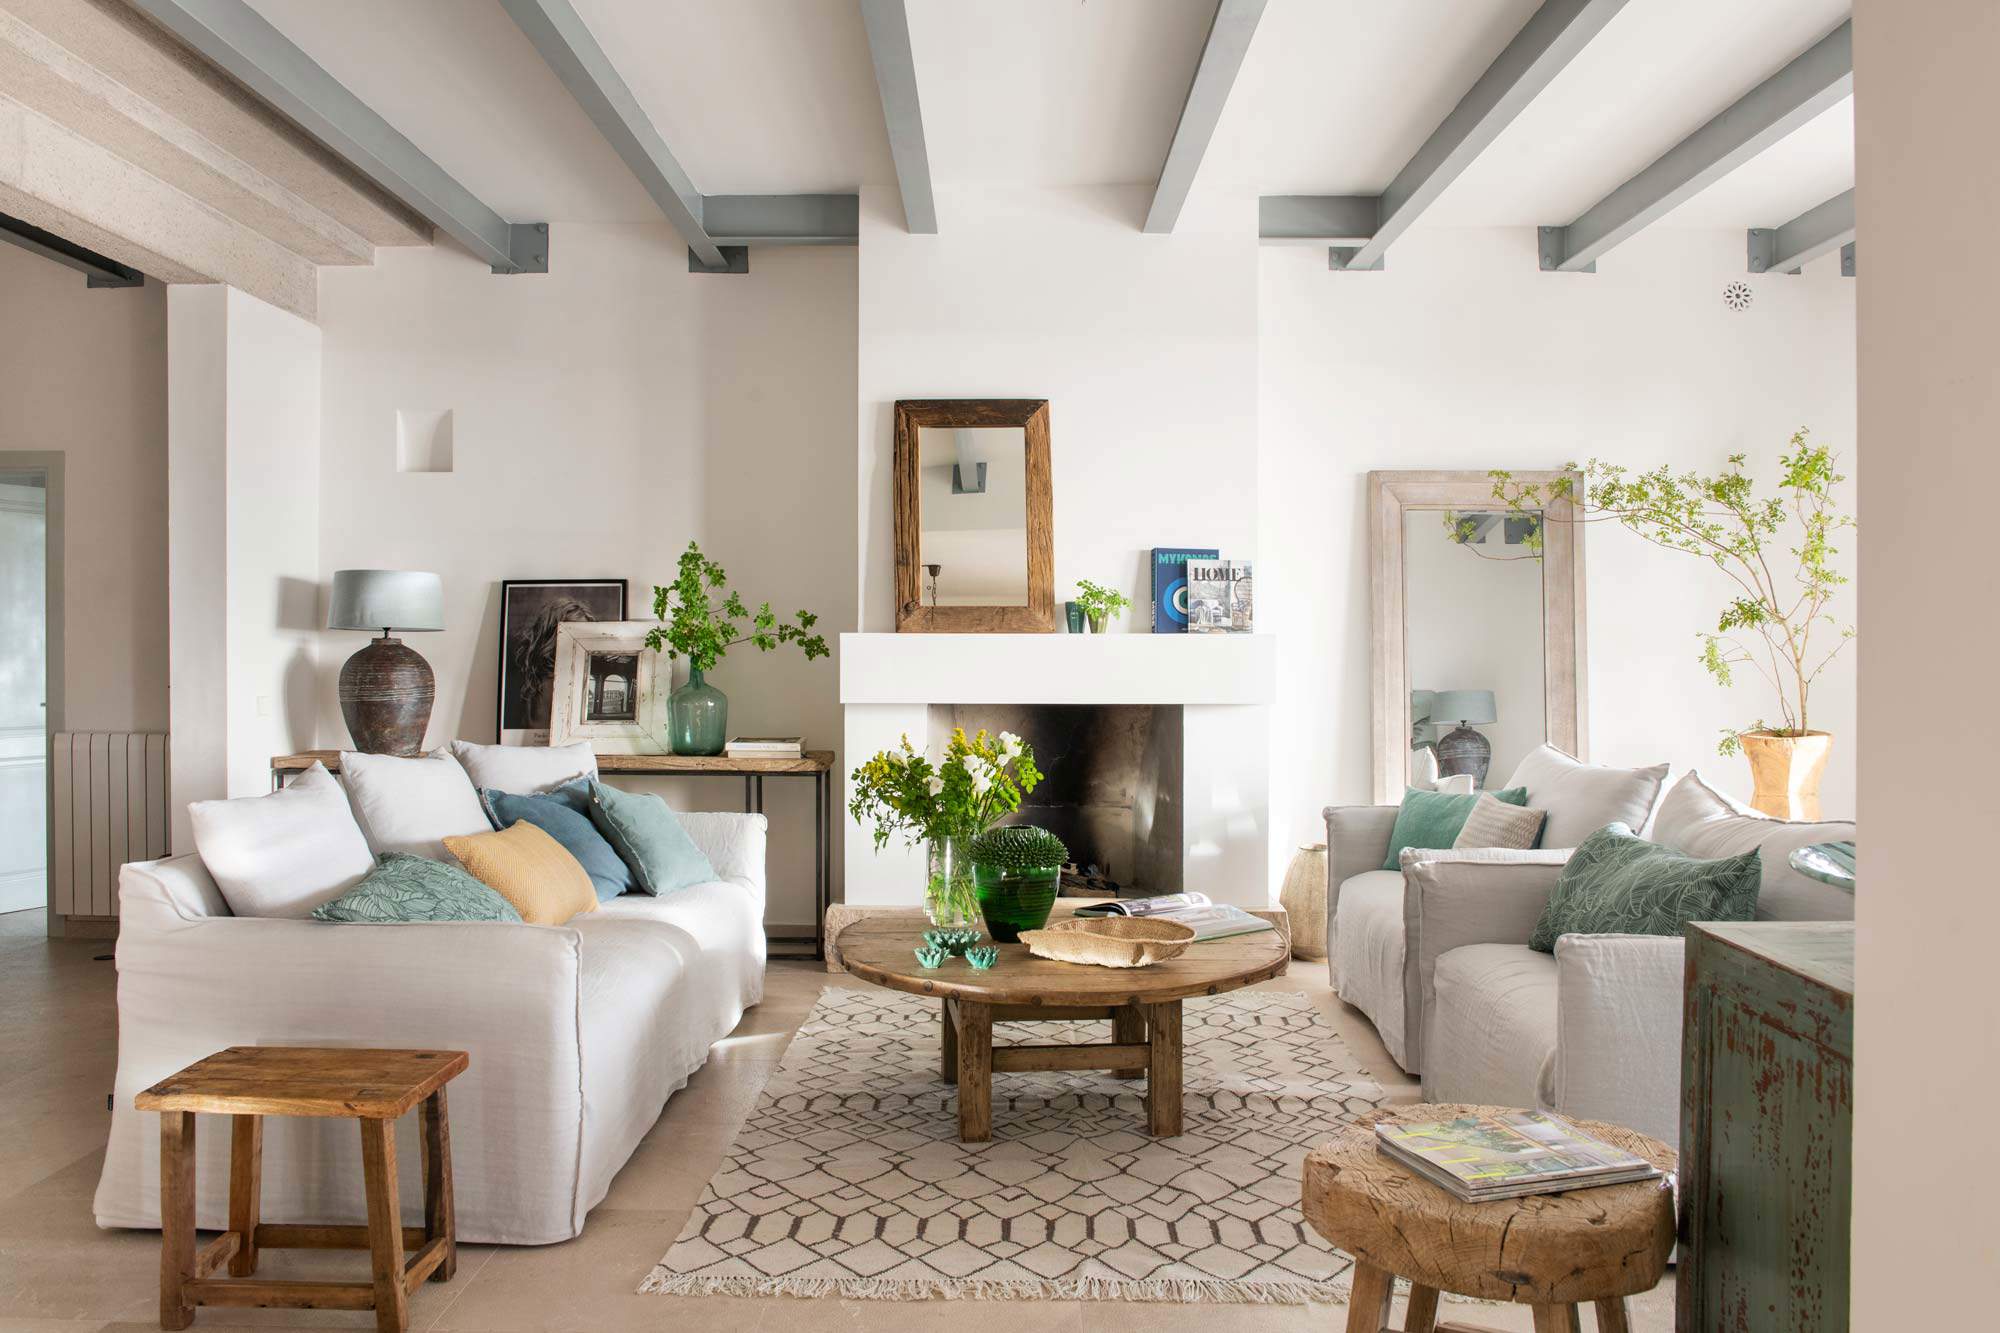 Salón con vigas en el techo lacadas en gris, chimenea, sofás enfrentados y mesa redonda de madera.